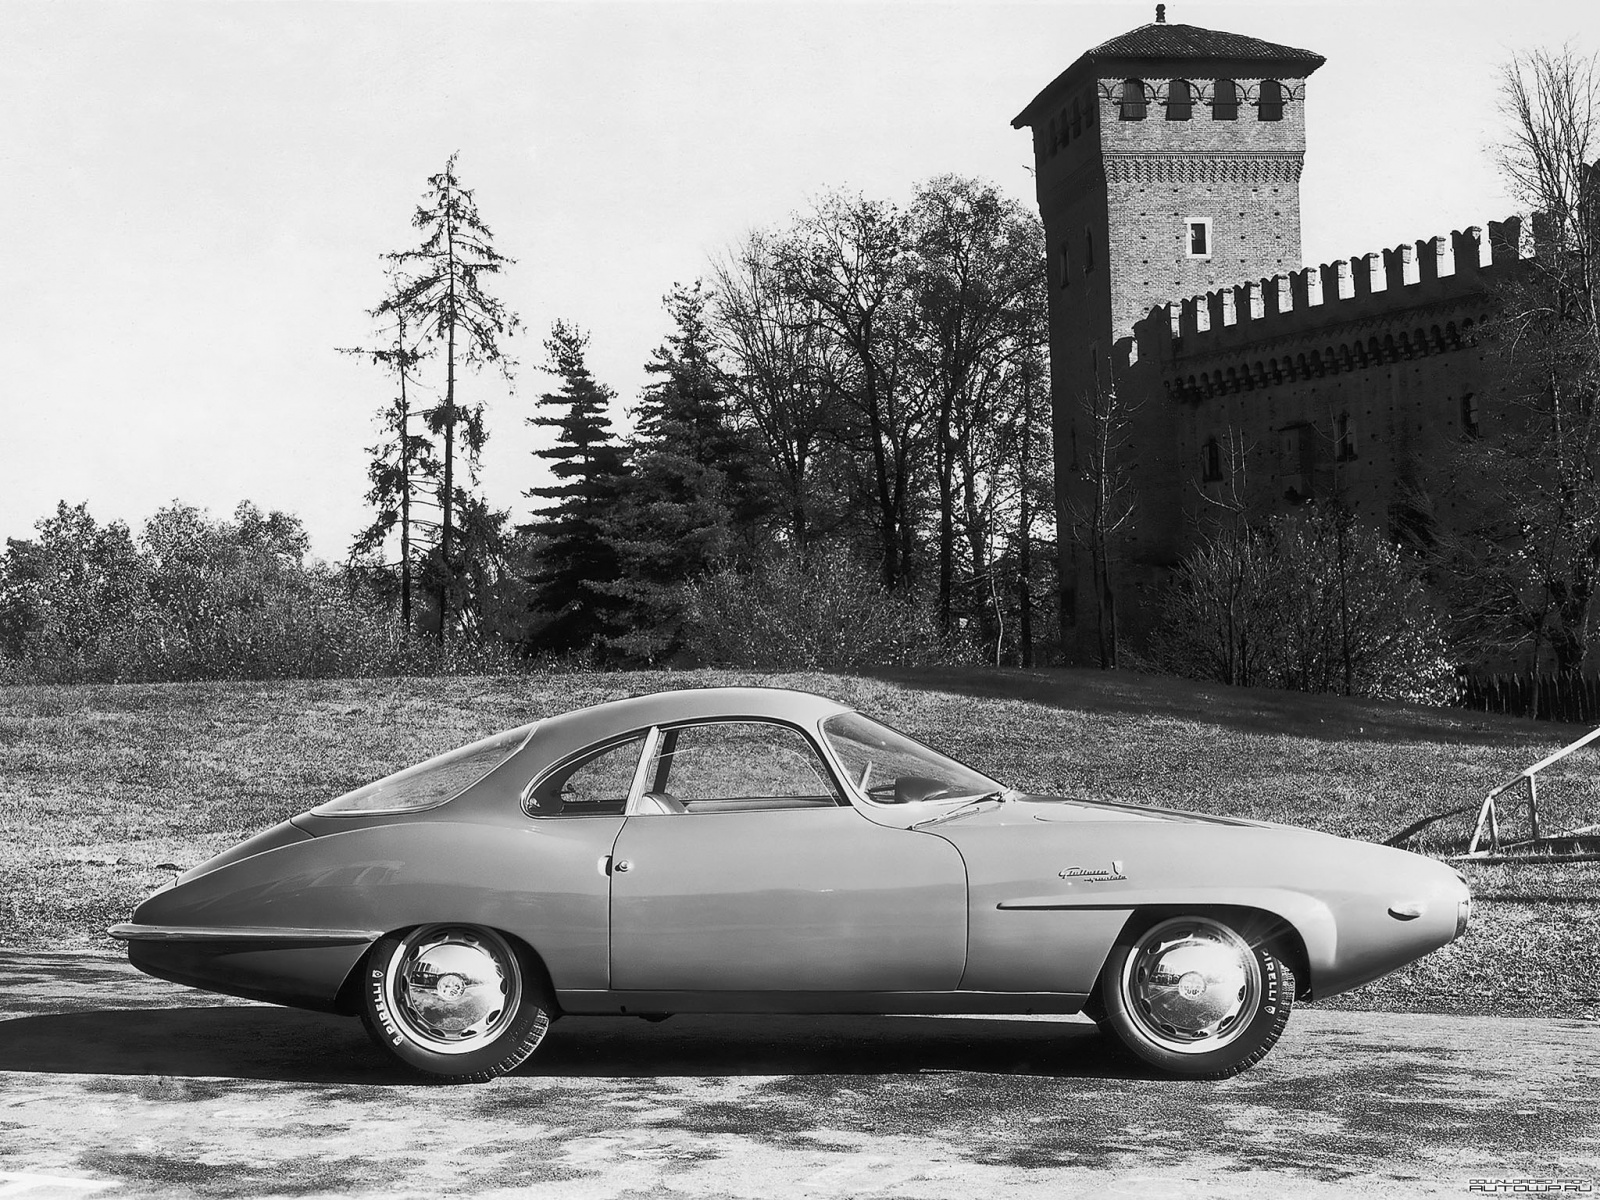 Популярные заставки и фоны Alfa Romeo Giulietta Sprint Speciale на компьютер